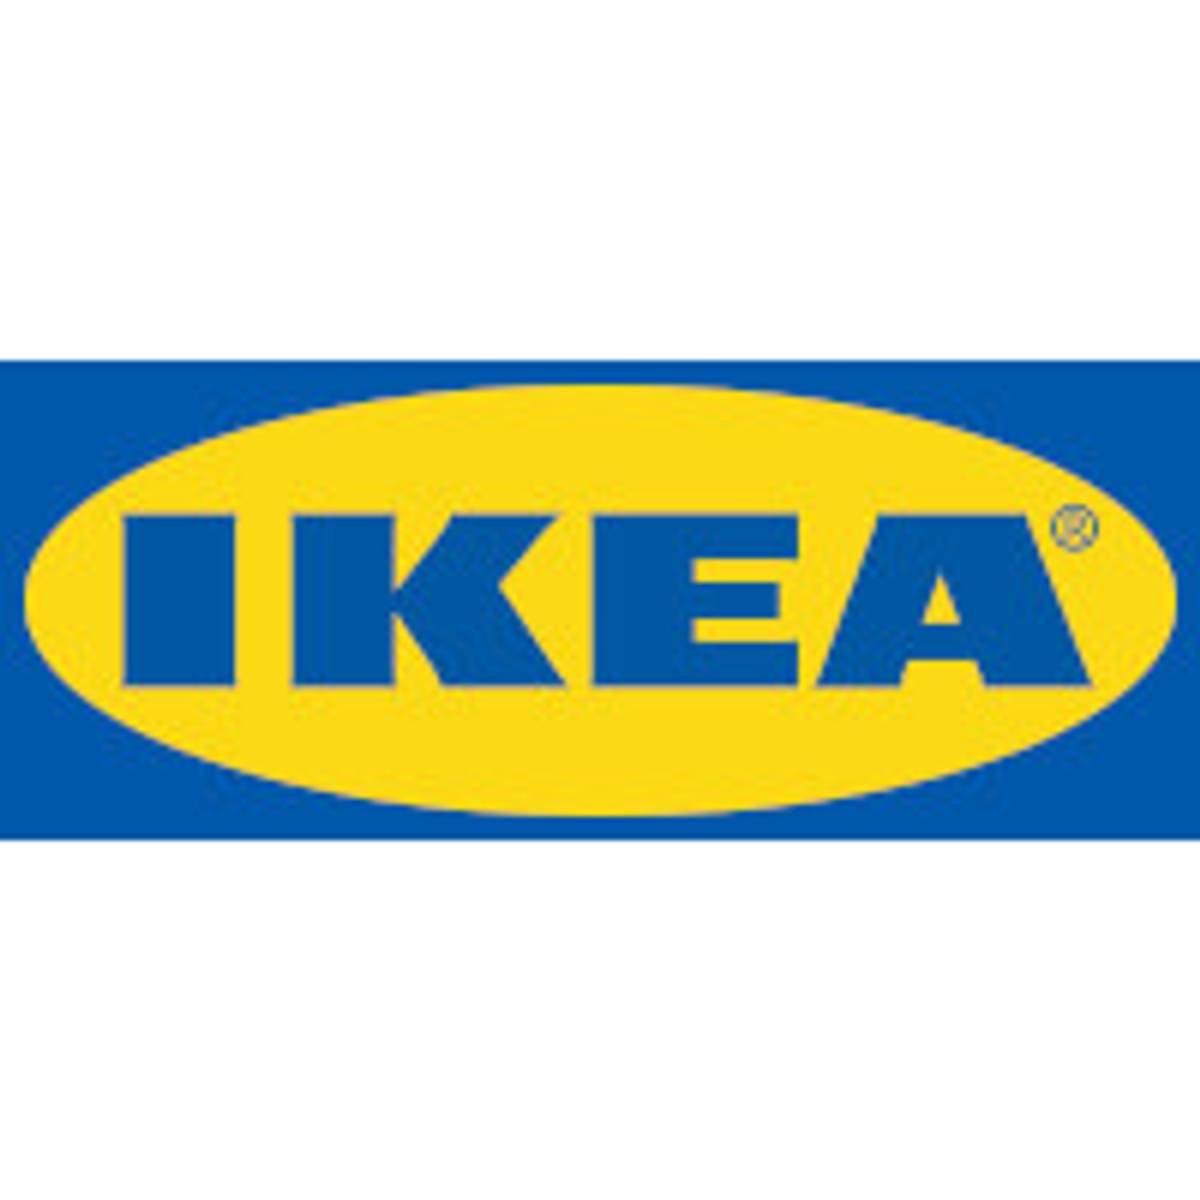 IKEA in Frankrijk beboet voor bespioneren van vakbonden, werknemers en ontevreden klanten image